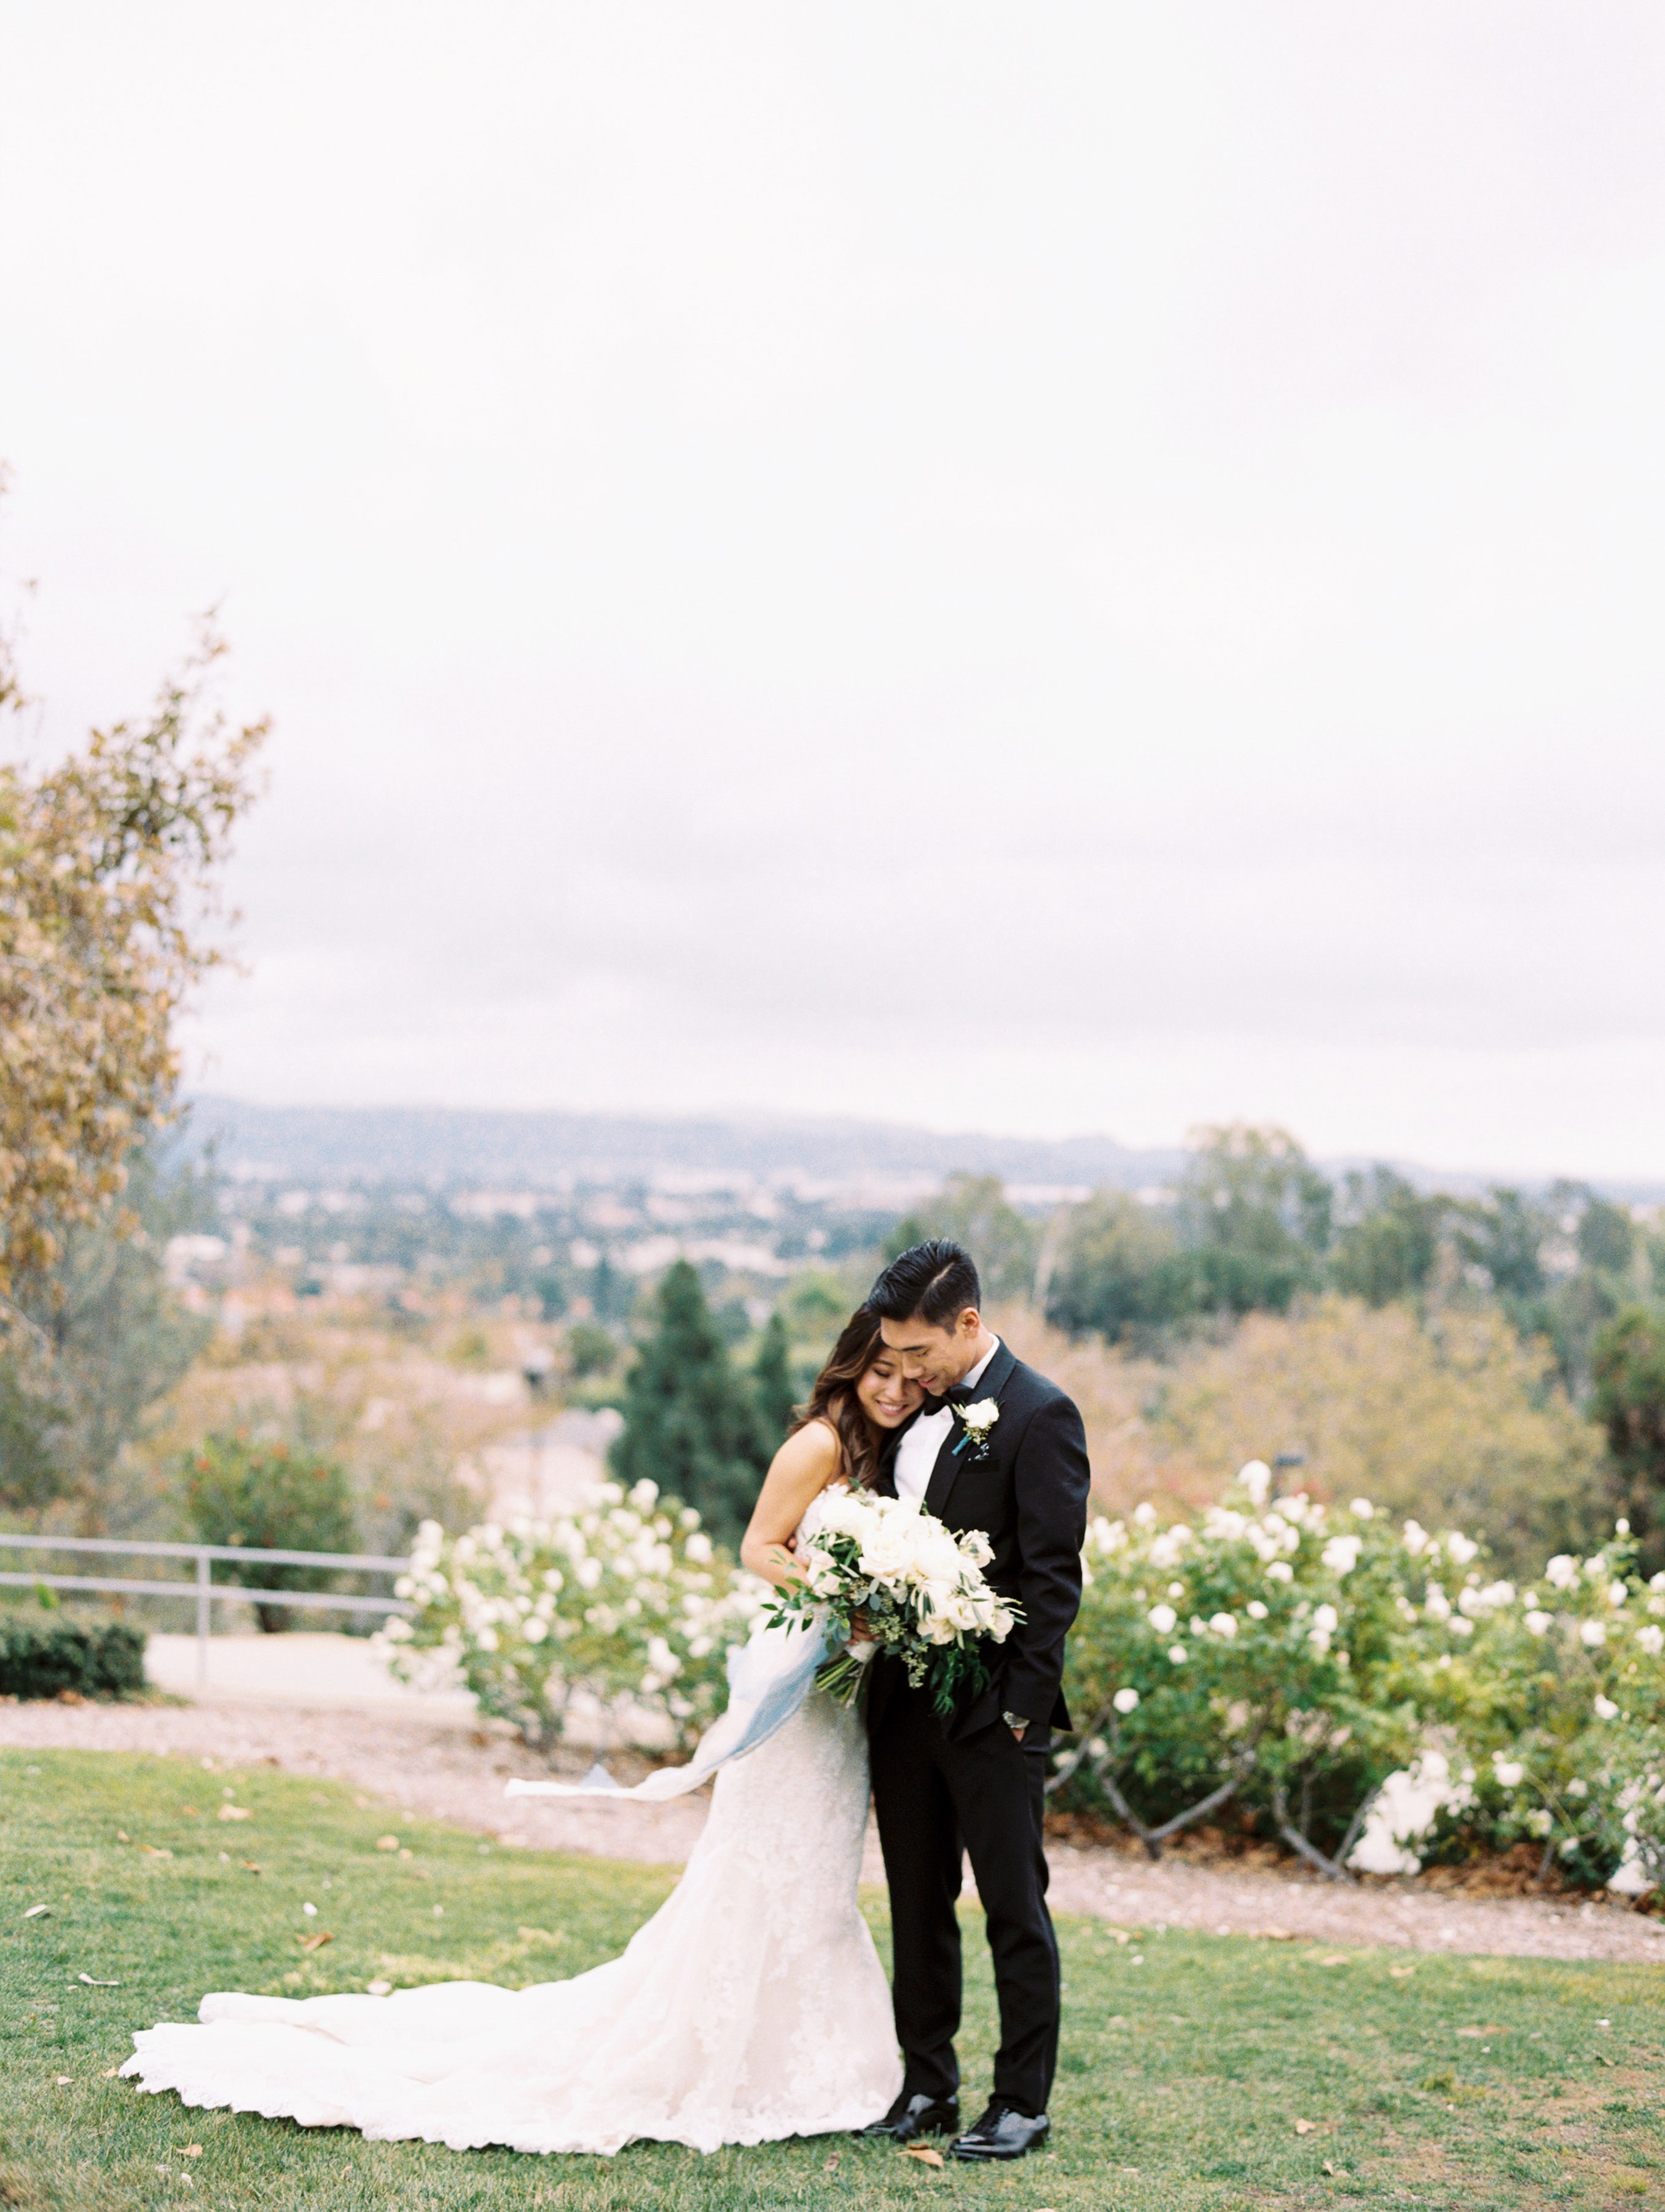 An Elegant Fall Wedding (With Pretty Pumpkin Decor!) | Brides